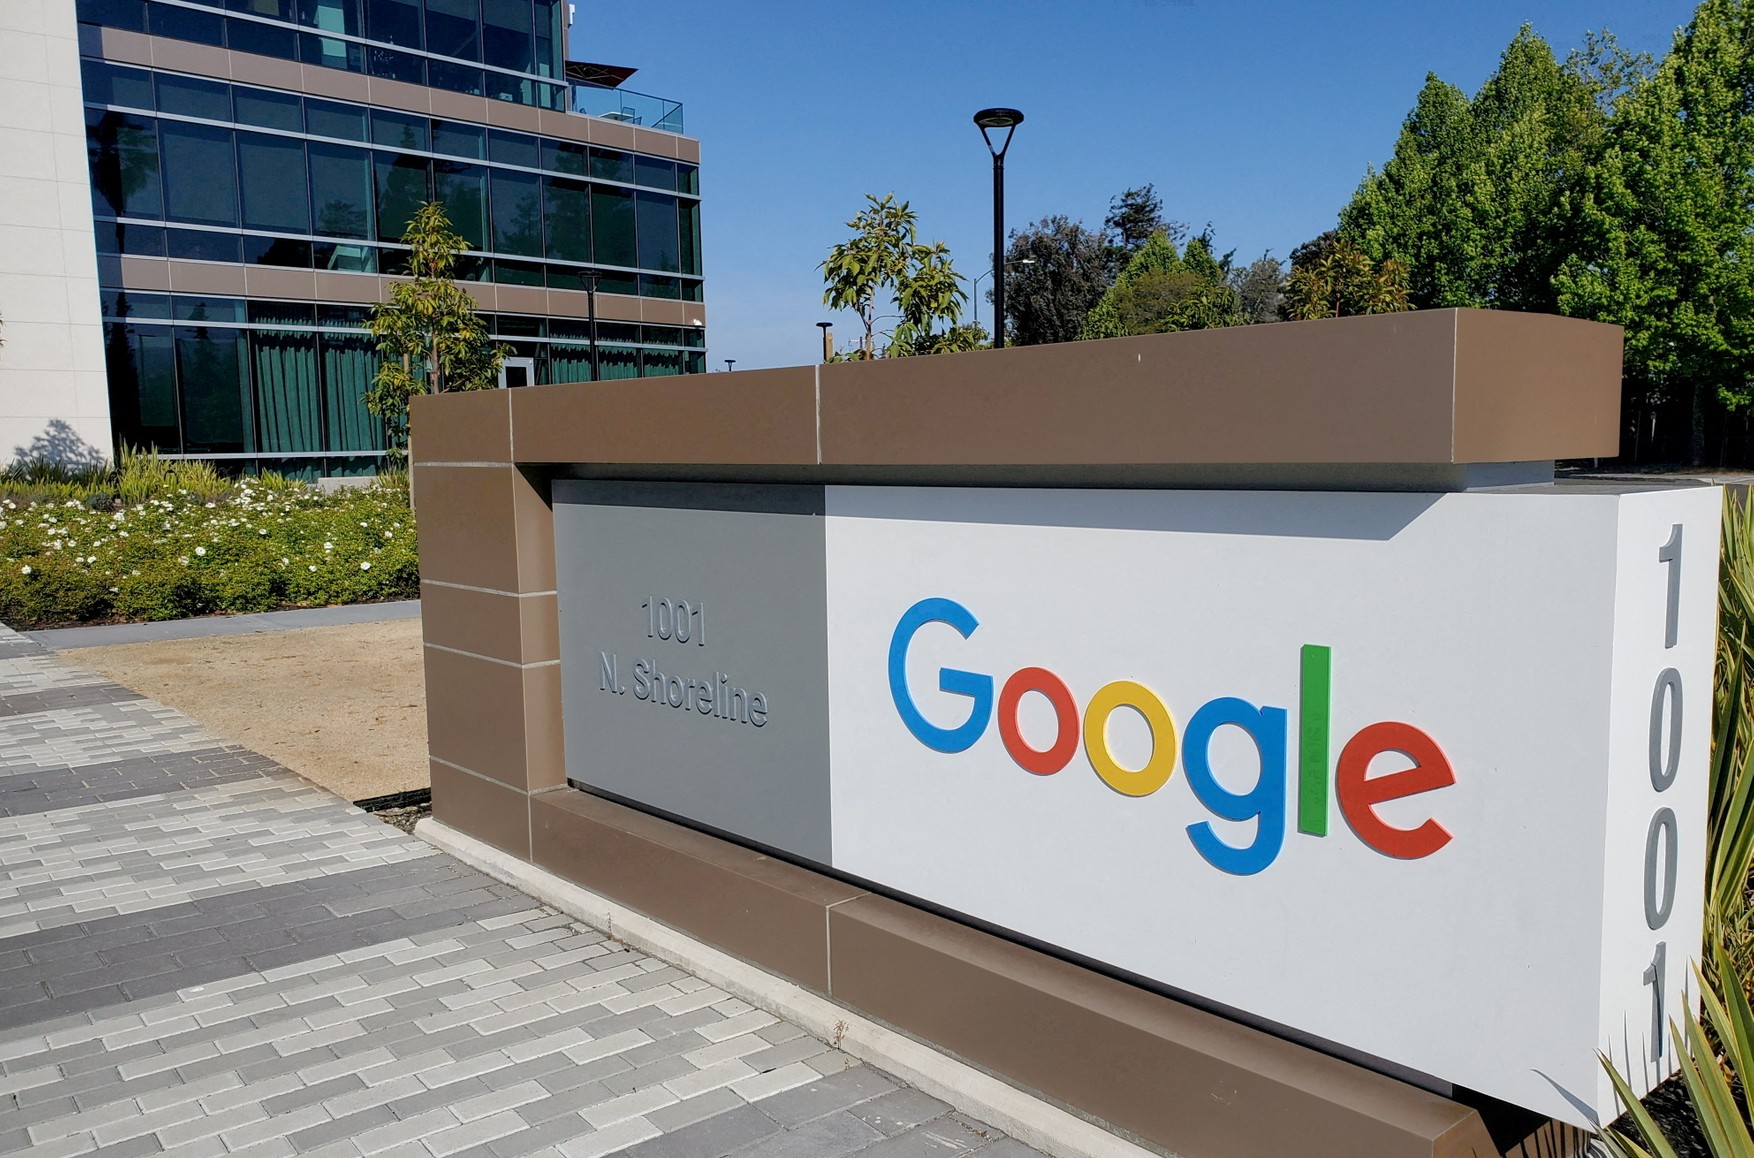 Google начал блокировать аккаунты попавших под санкции российских депутатов 